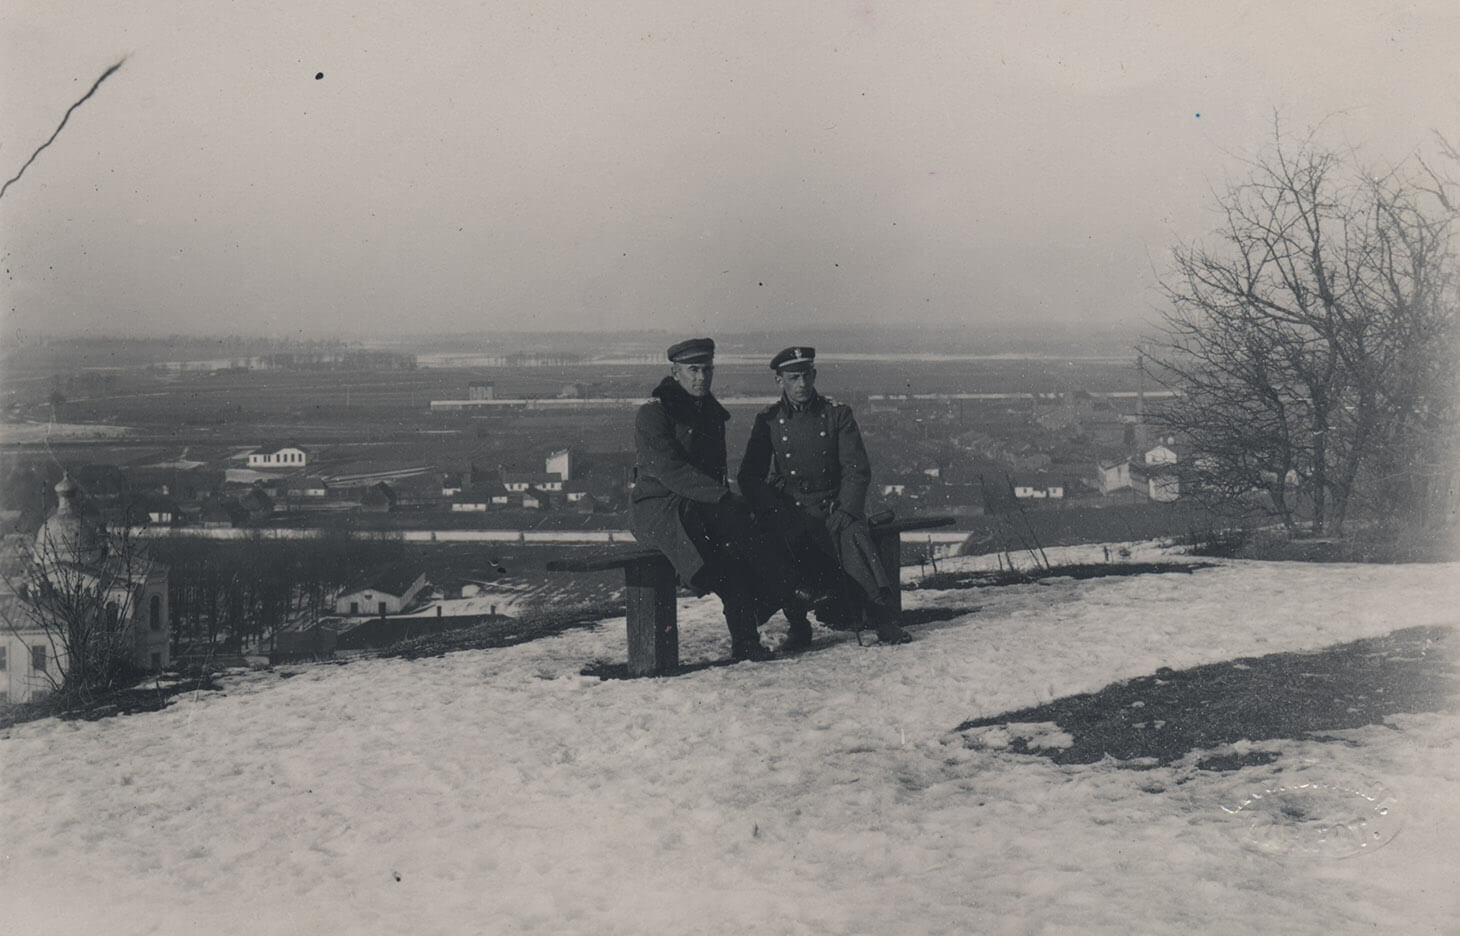 Czarno-biała fotografia, w której  centrum Generał Edward Rydz-Śmigły w towarzystwie oficera siedzi na prostej, drewnianej ławce. Mężczyźni ubrani są w wojskowe, zimowe płaszcze. Przed nimi na trawie zalega topniejący śnieg. Z prawej strony kadru widać konary bezlistnych krzewów. Za plecami siedzących, poniżej punktu widokowego i w dali rozpościera się miasto.